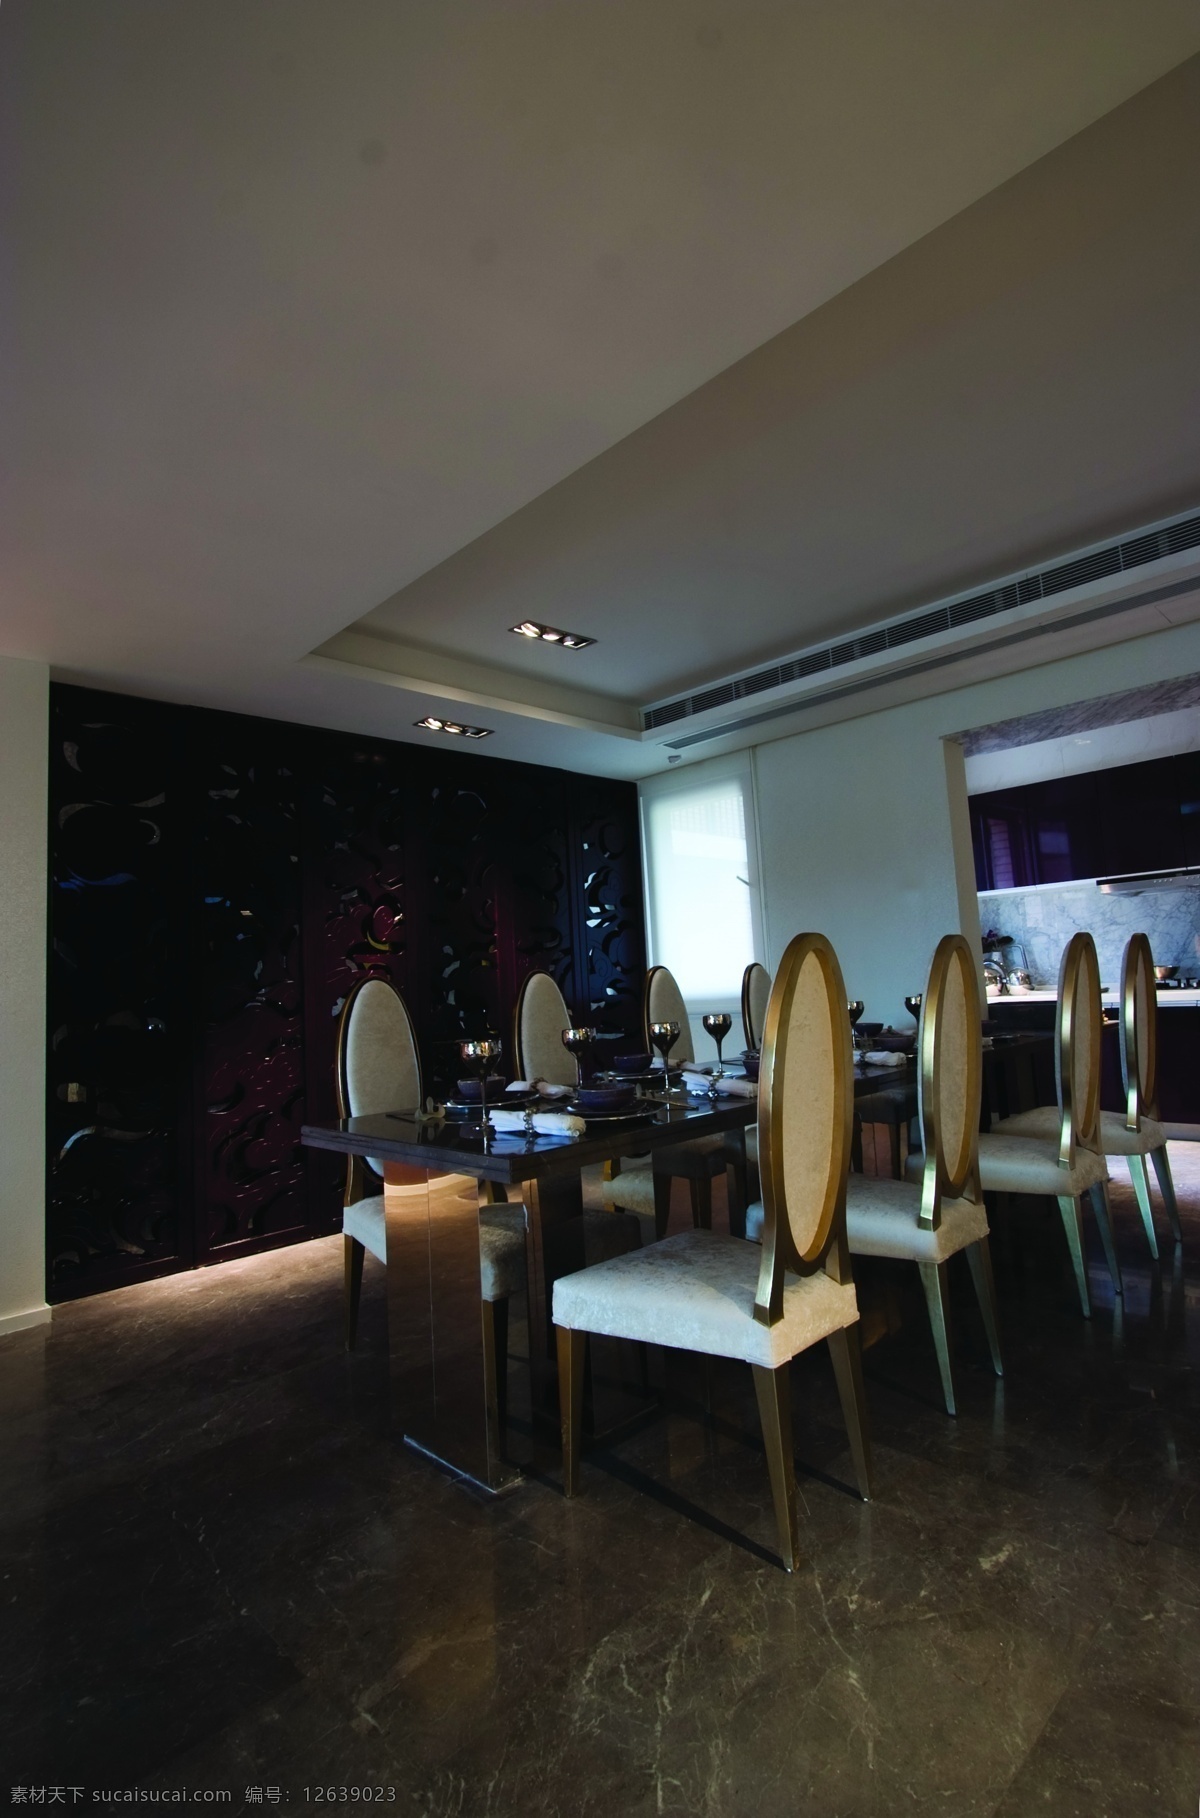 餐厅效果图a 室内设计 现代简约 效果图 餐厅 餐桌 黑色